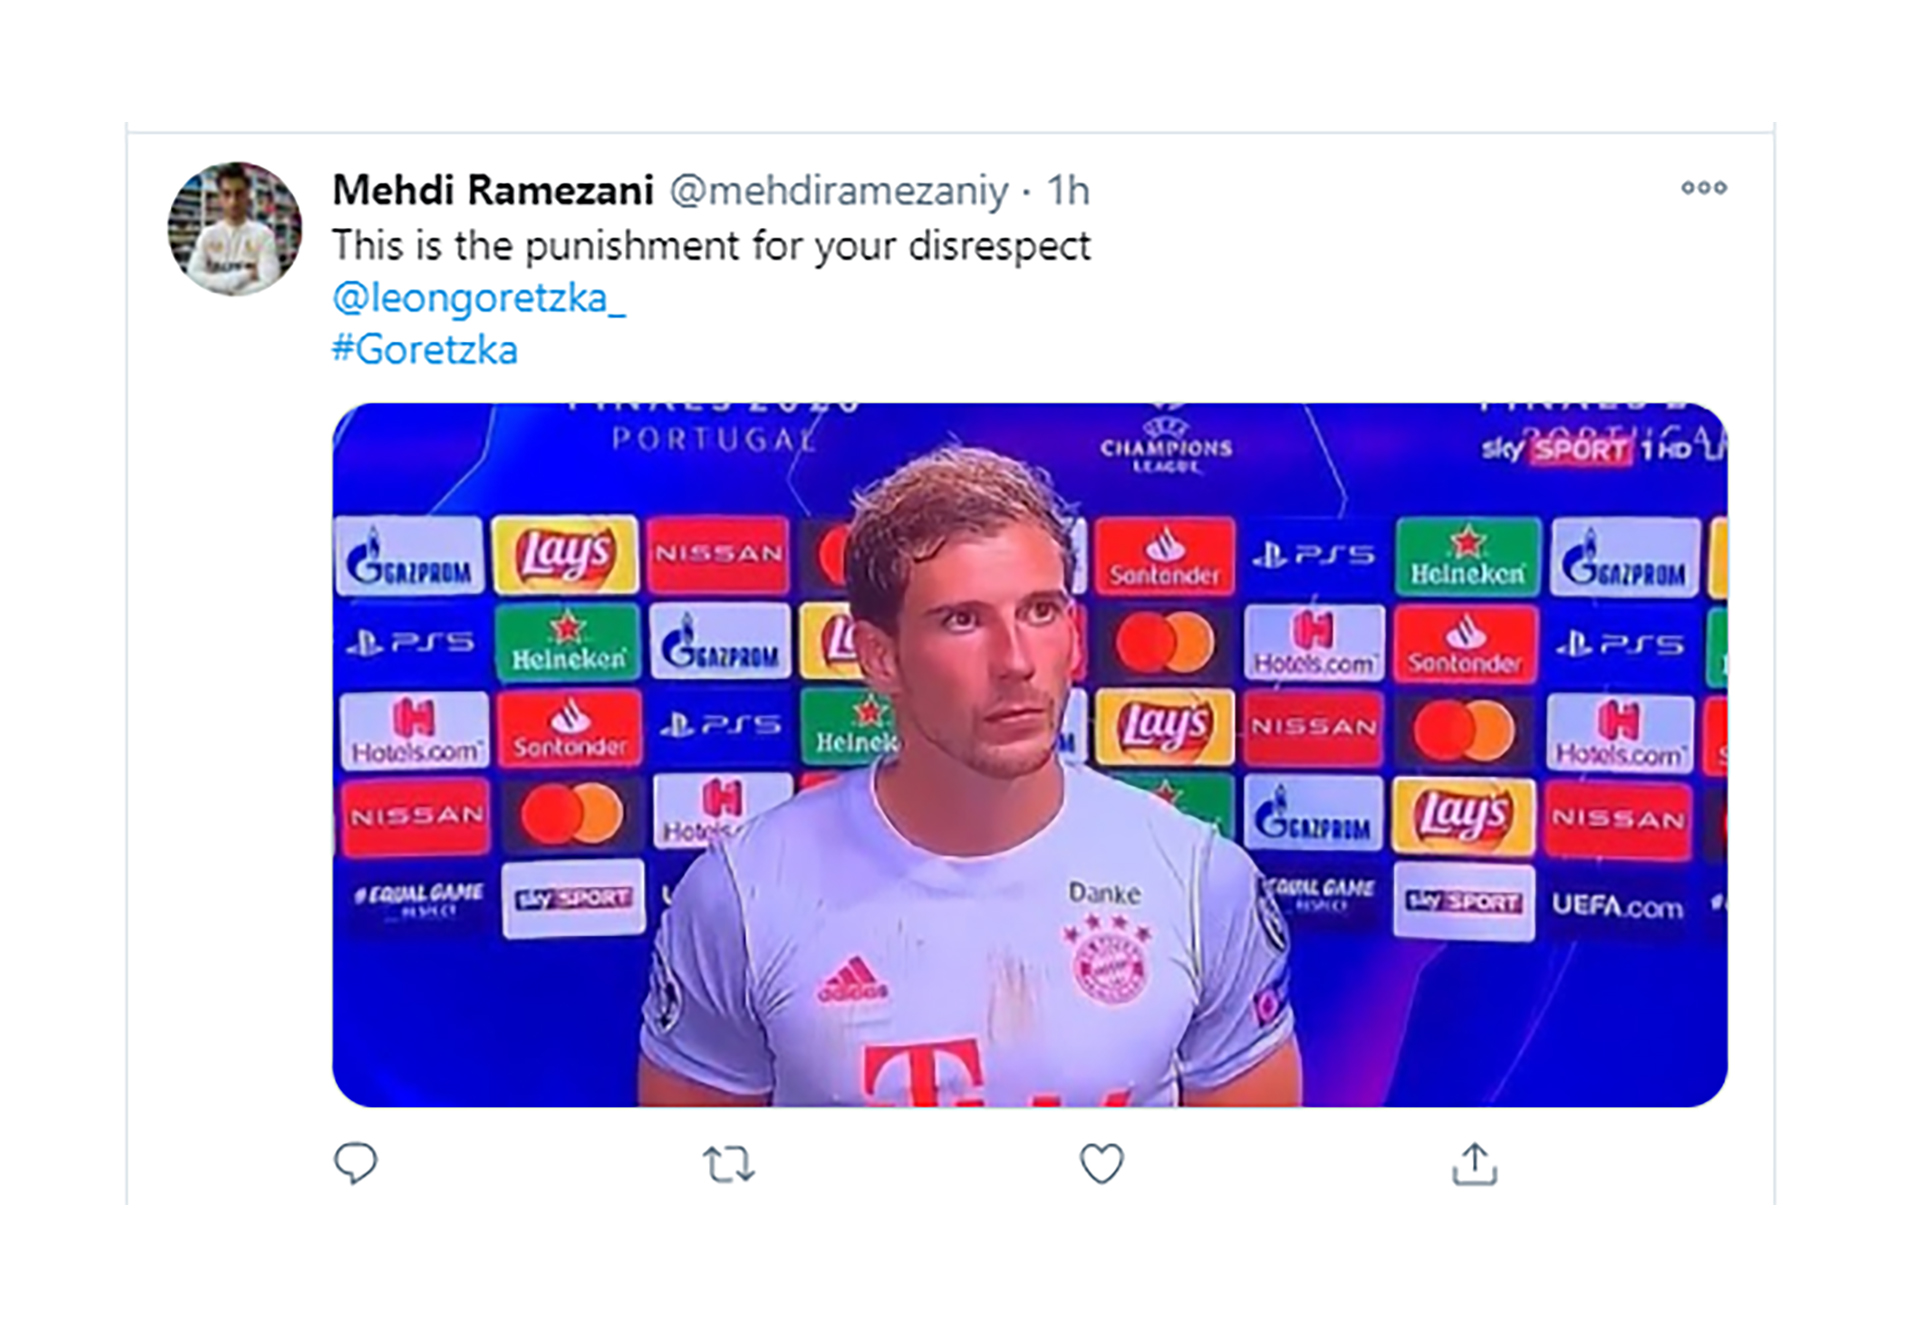 "Es un castigo por su falta de respeto", escribió el usuario, en alusión a aquella frase a Messi